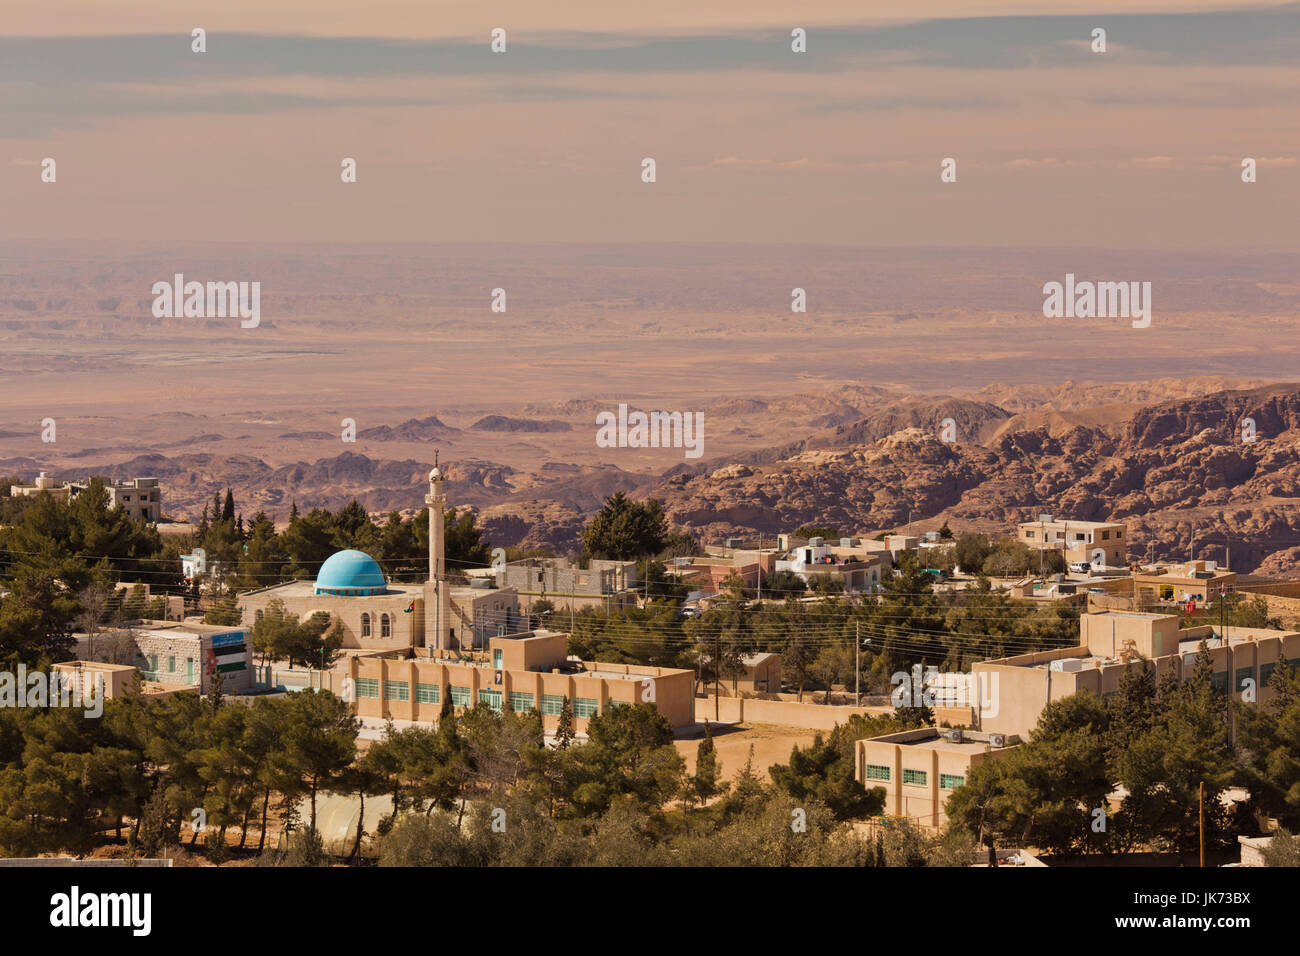 Jordan, Ar-Rajif, elevated desert town view Stock Photo